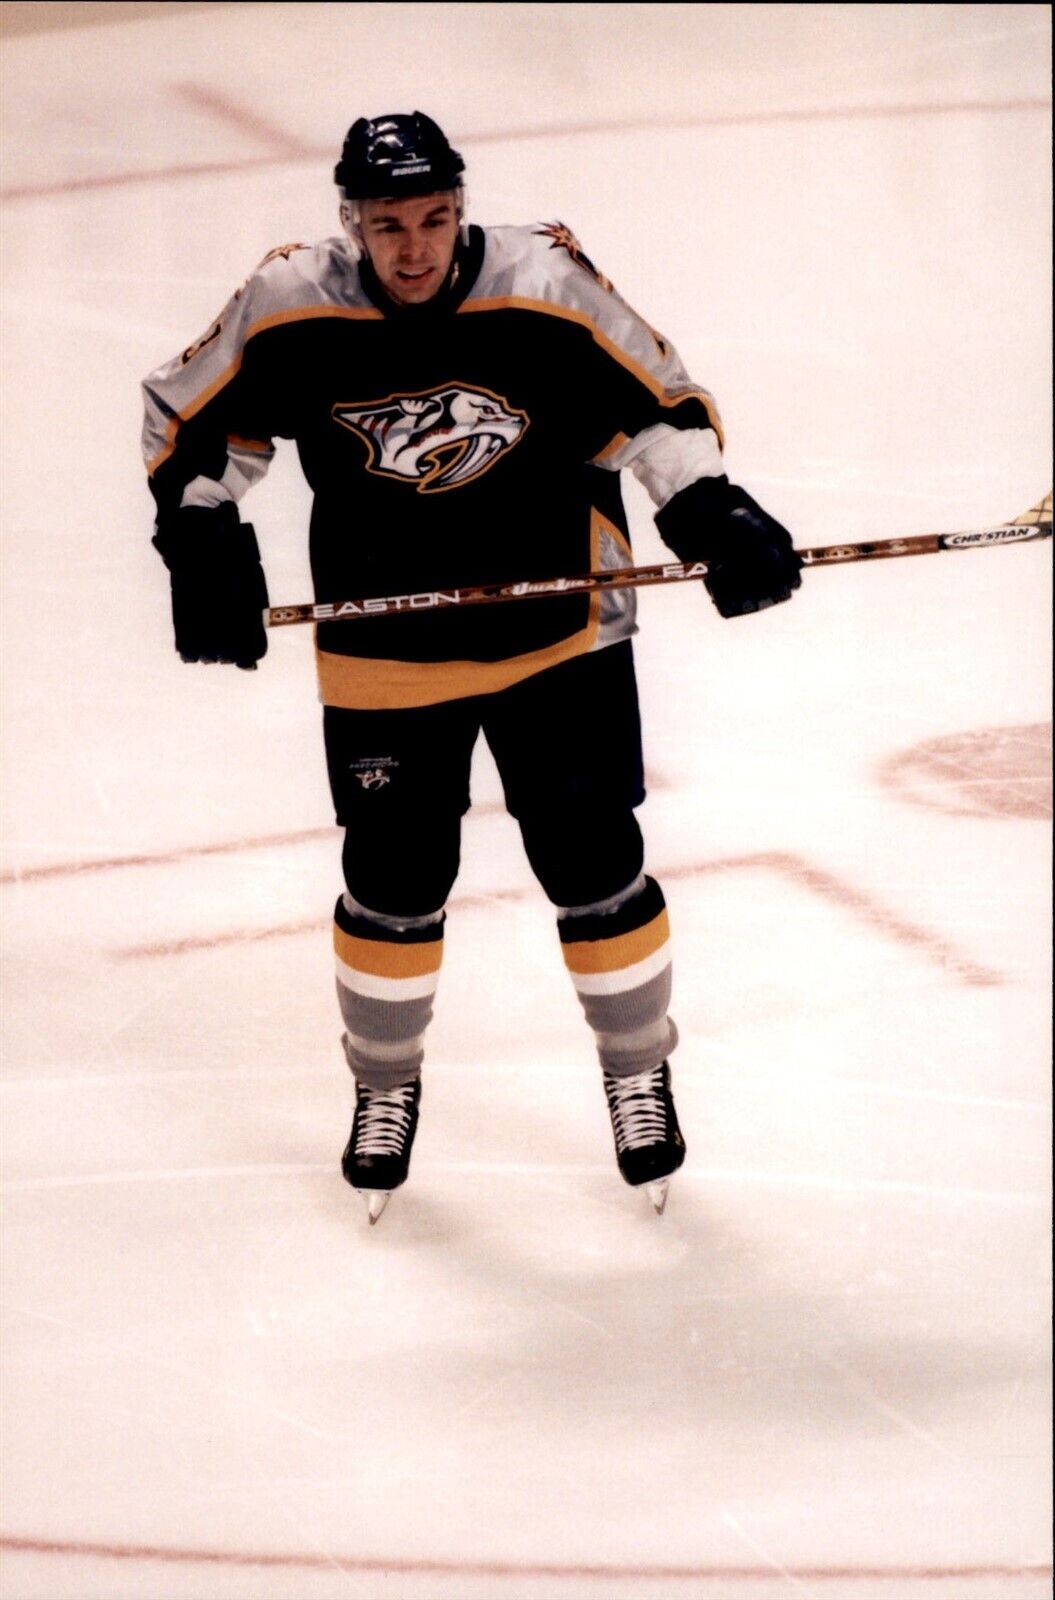 PF37 2001 Orig Photo NASHVILLE PREDATORS NHL HOCKEY LEFT WING VITALI YACHMENEV